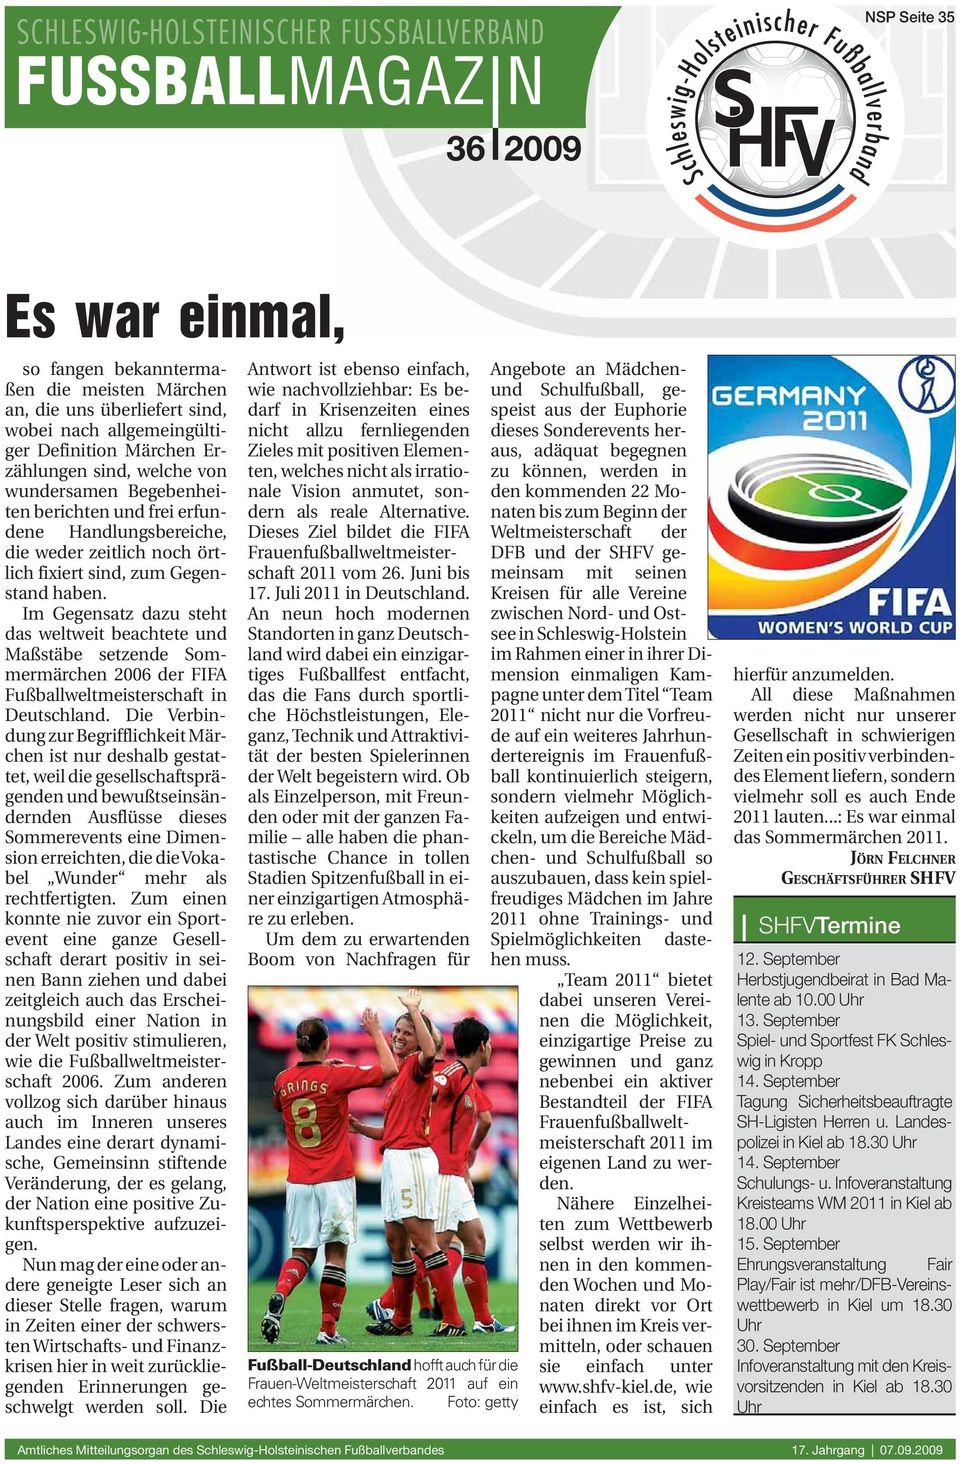 Im Gegensatz dazu steht das weltweit beachtete und Maßstäbe setzende Sommermärchen 2006 der FIFA Fußballweltmeisterschaft in Deutschland.